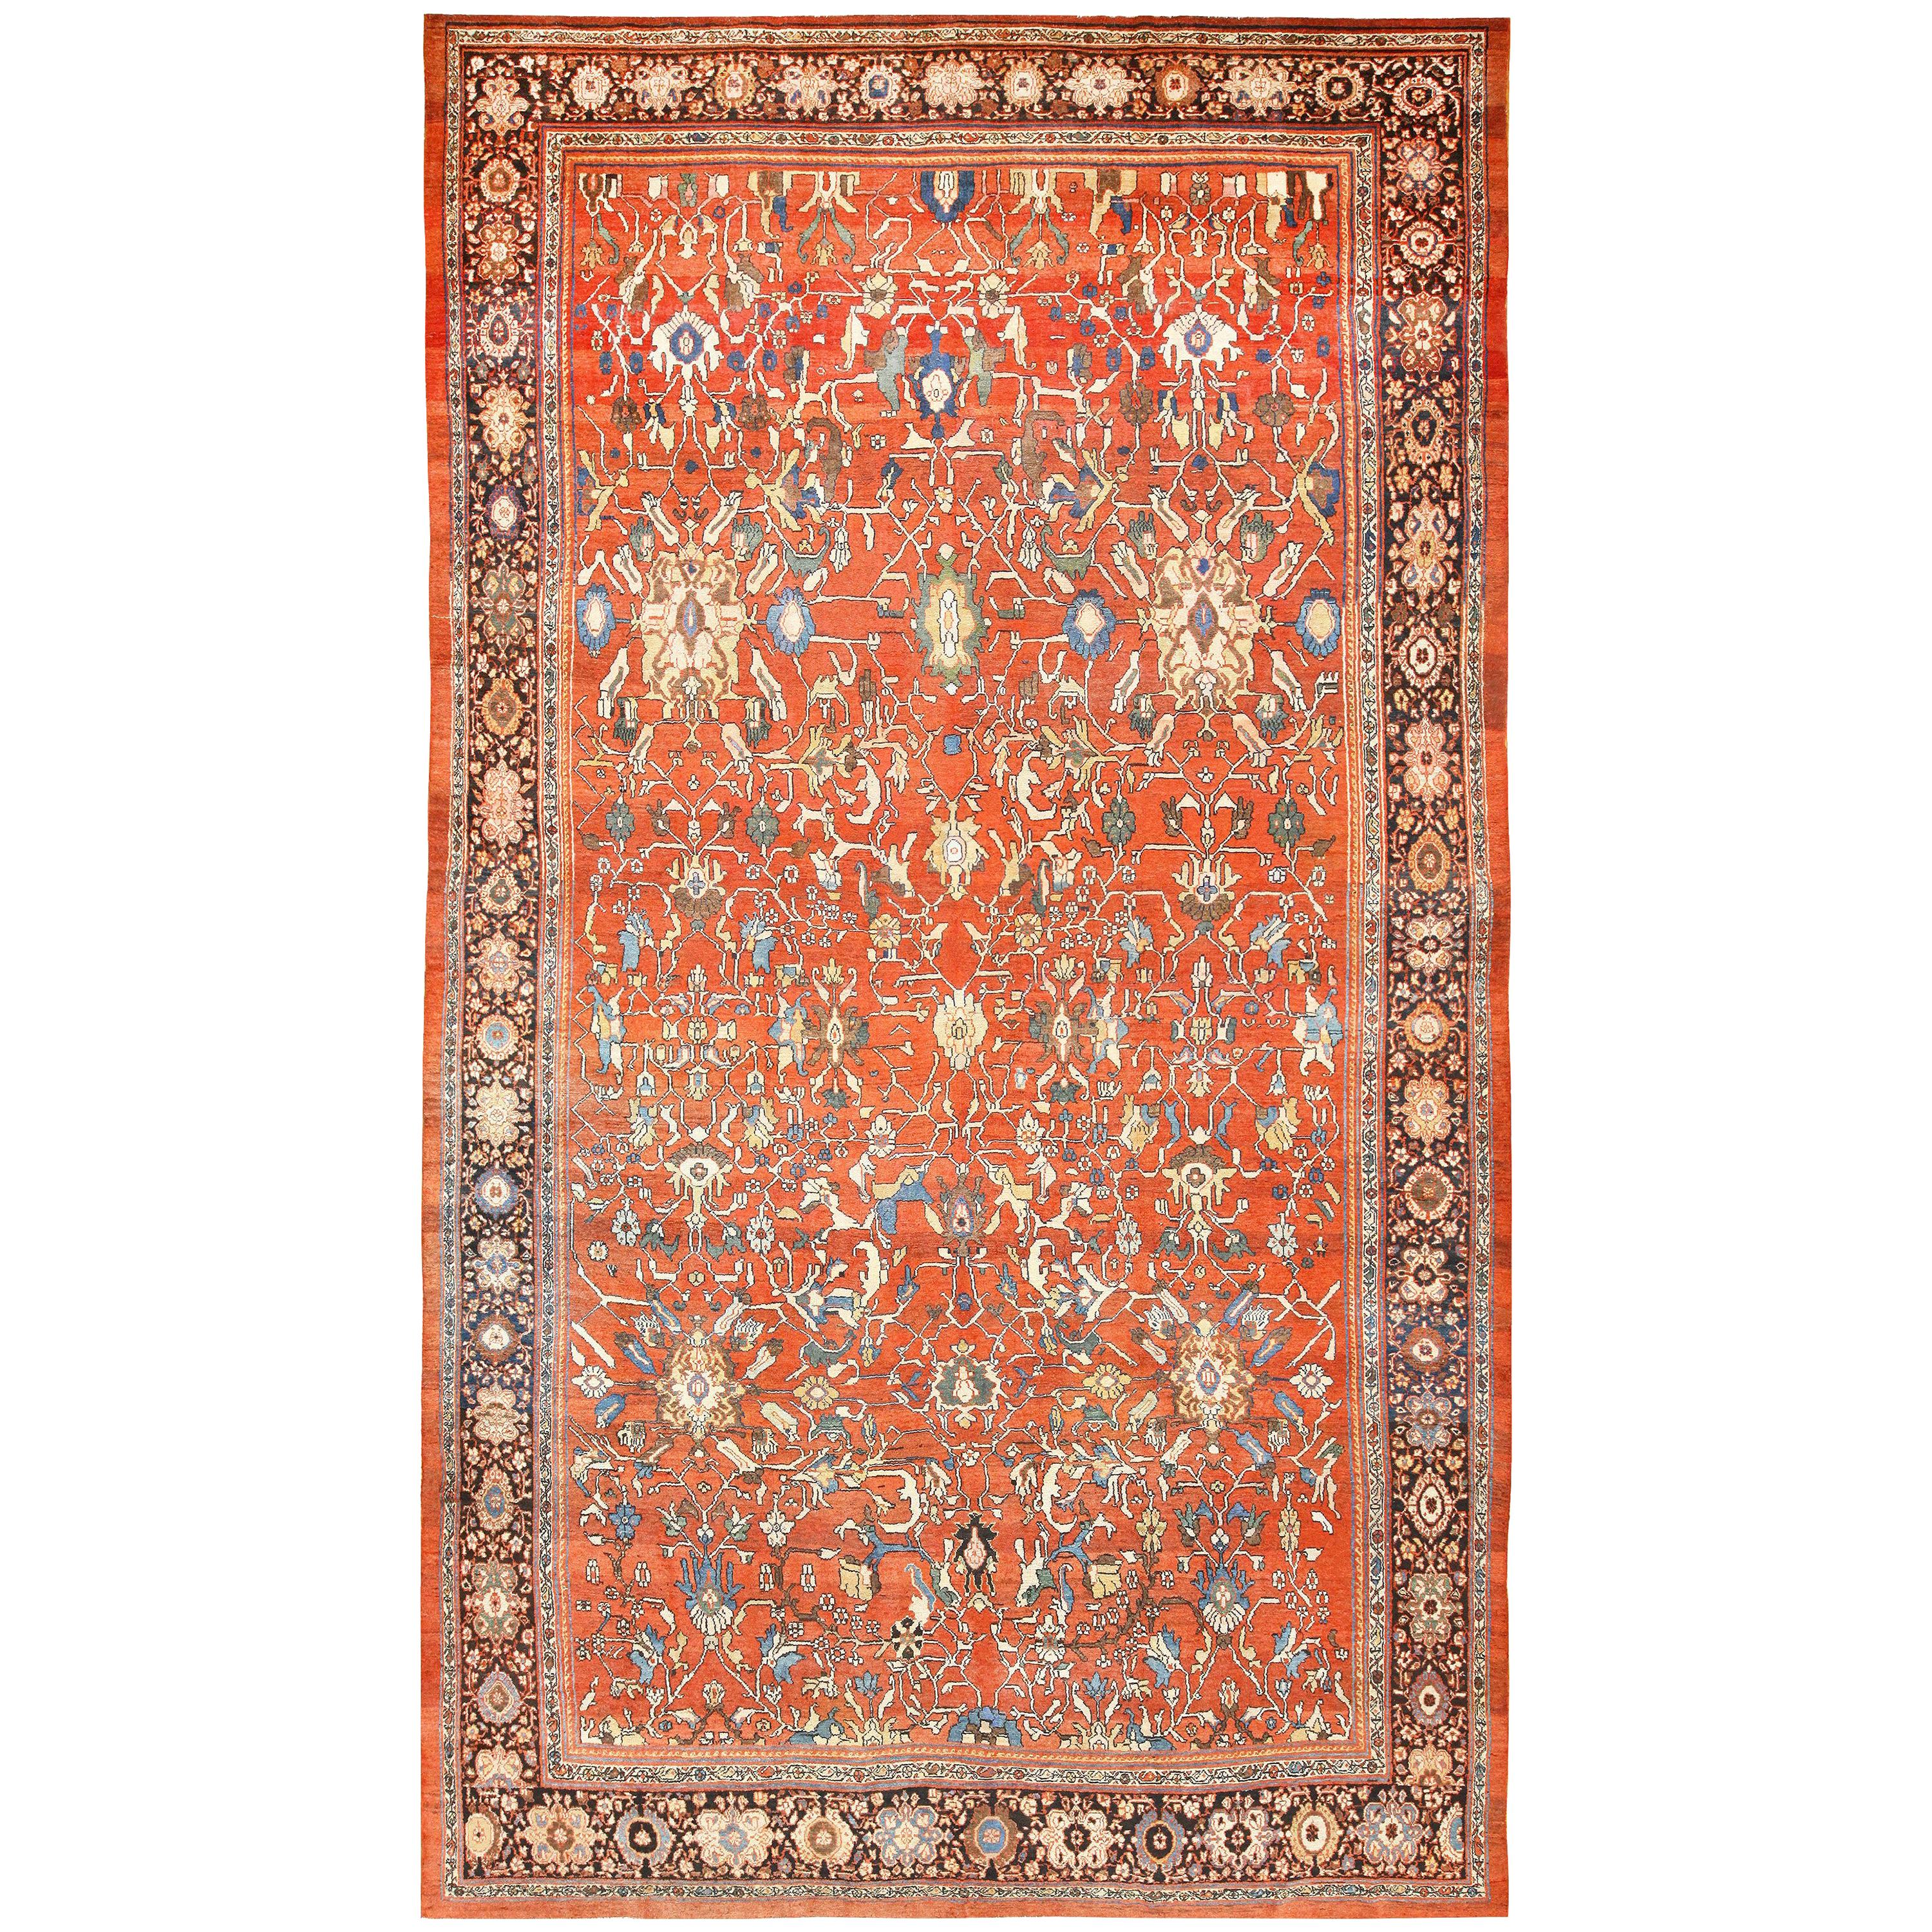 Antiker persischer Sultanabad-Teppich aus Persien. Größe: 13 Fuß 6 Zoll x 23 Fuß